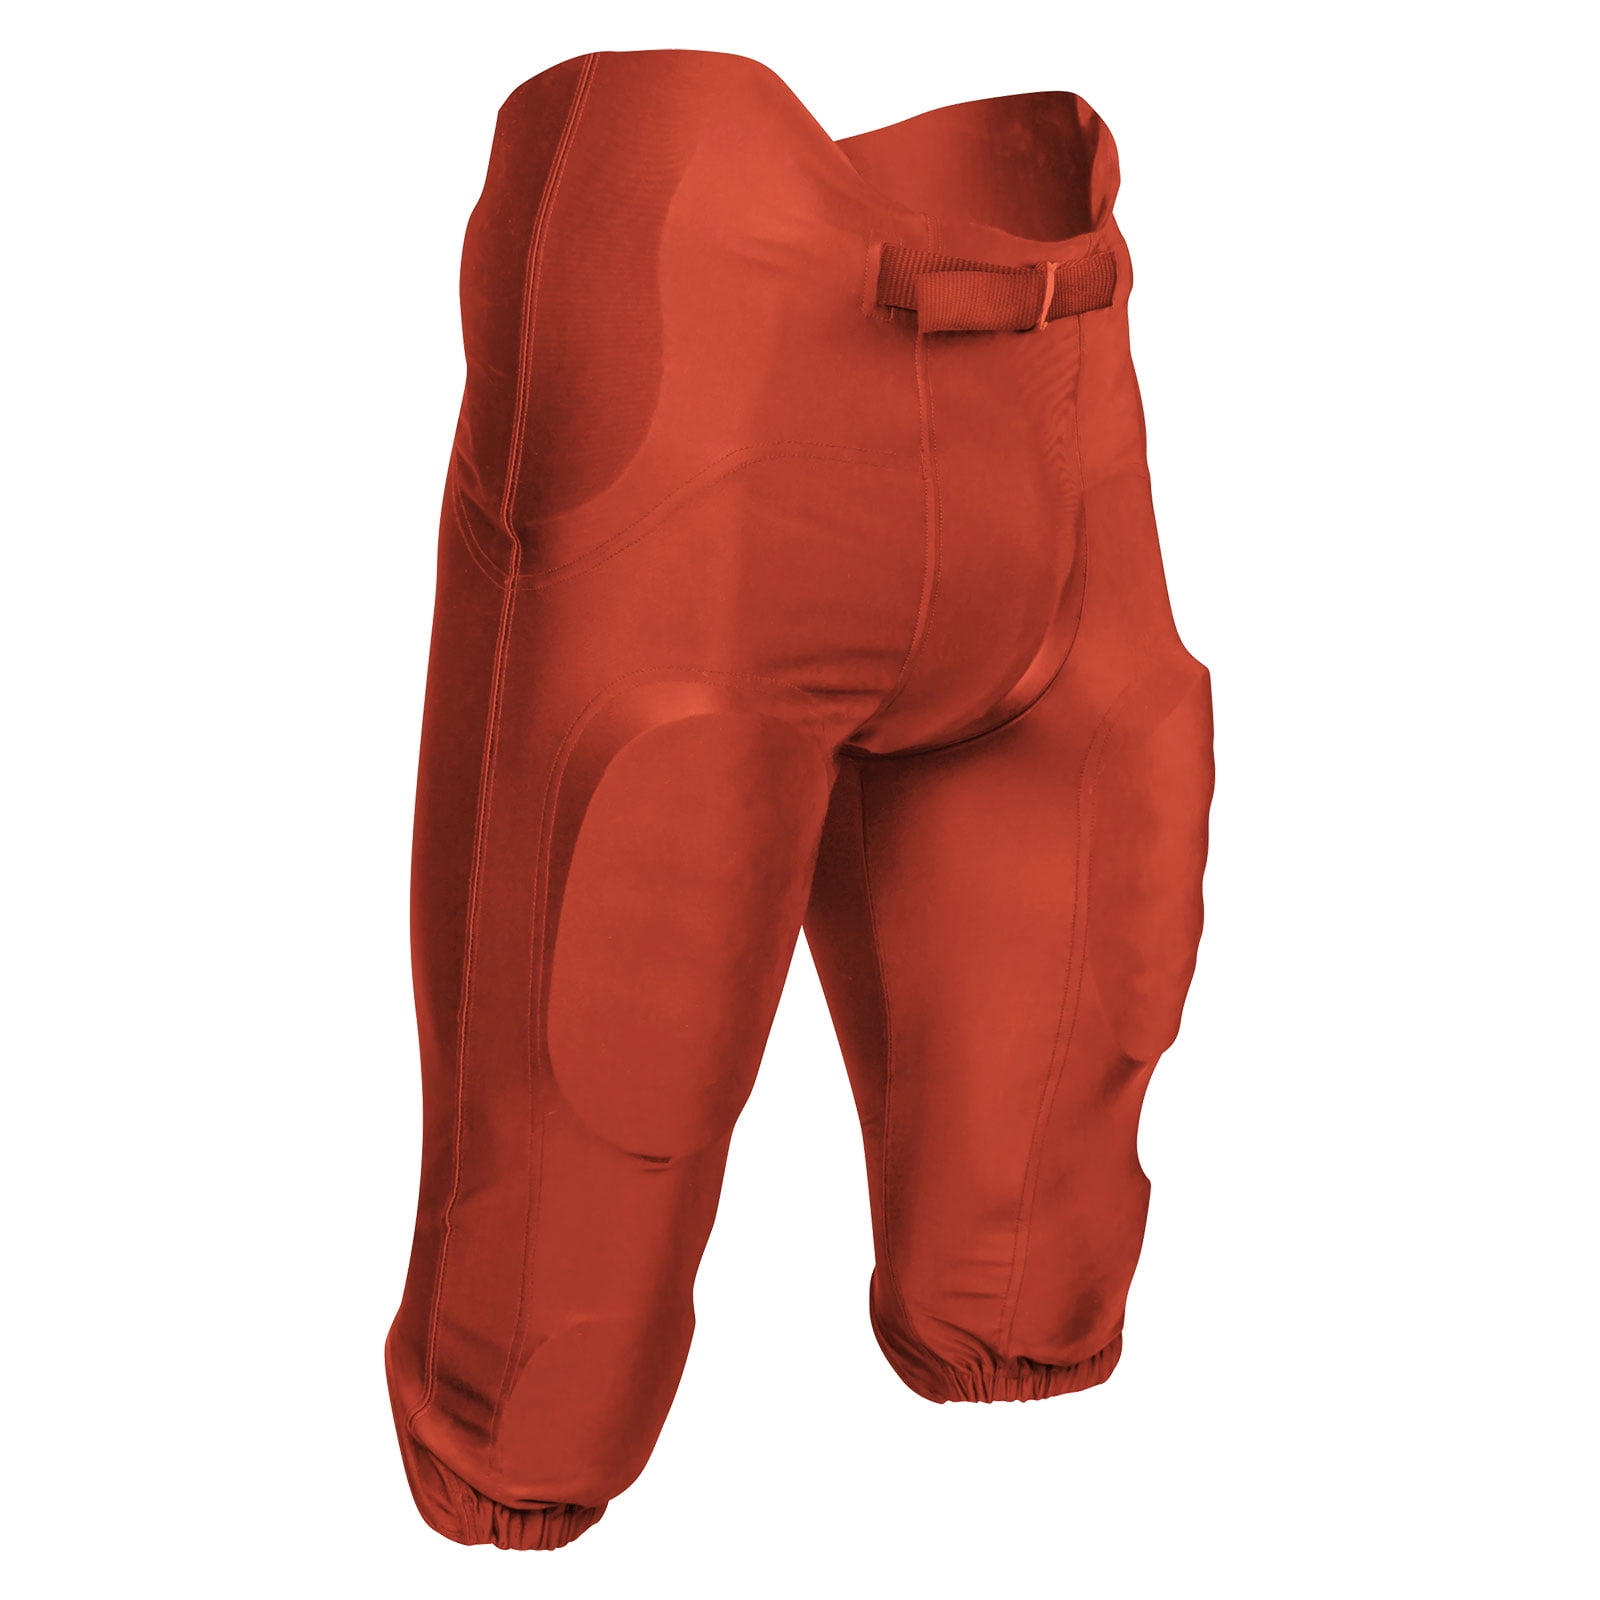 Terminator 2 Integrated Football Game Pants, Adult Medium, Orange